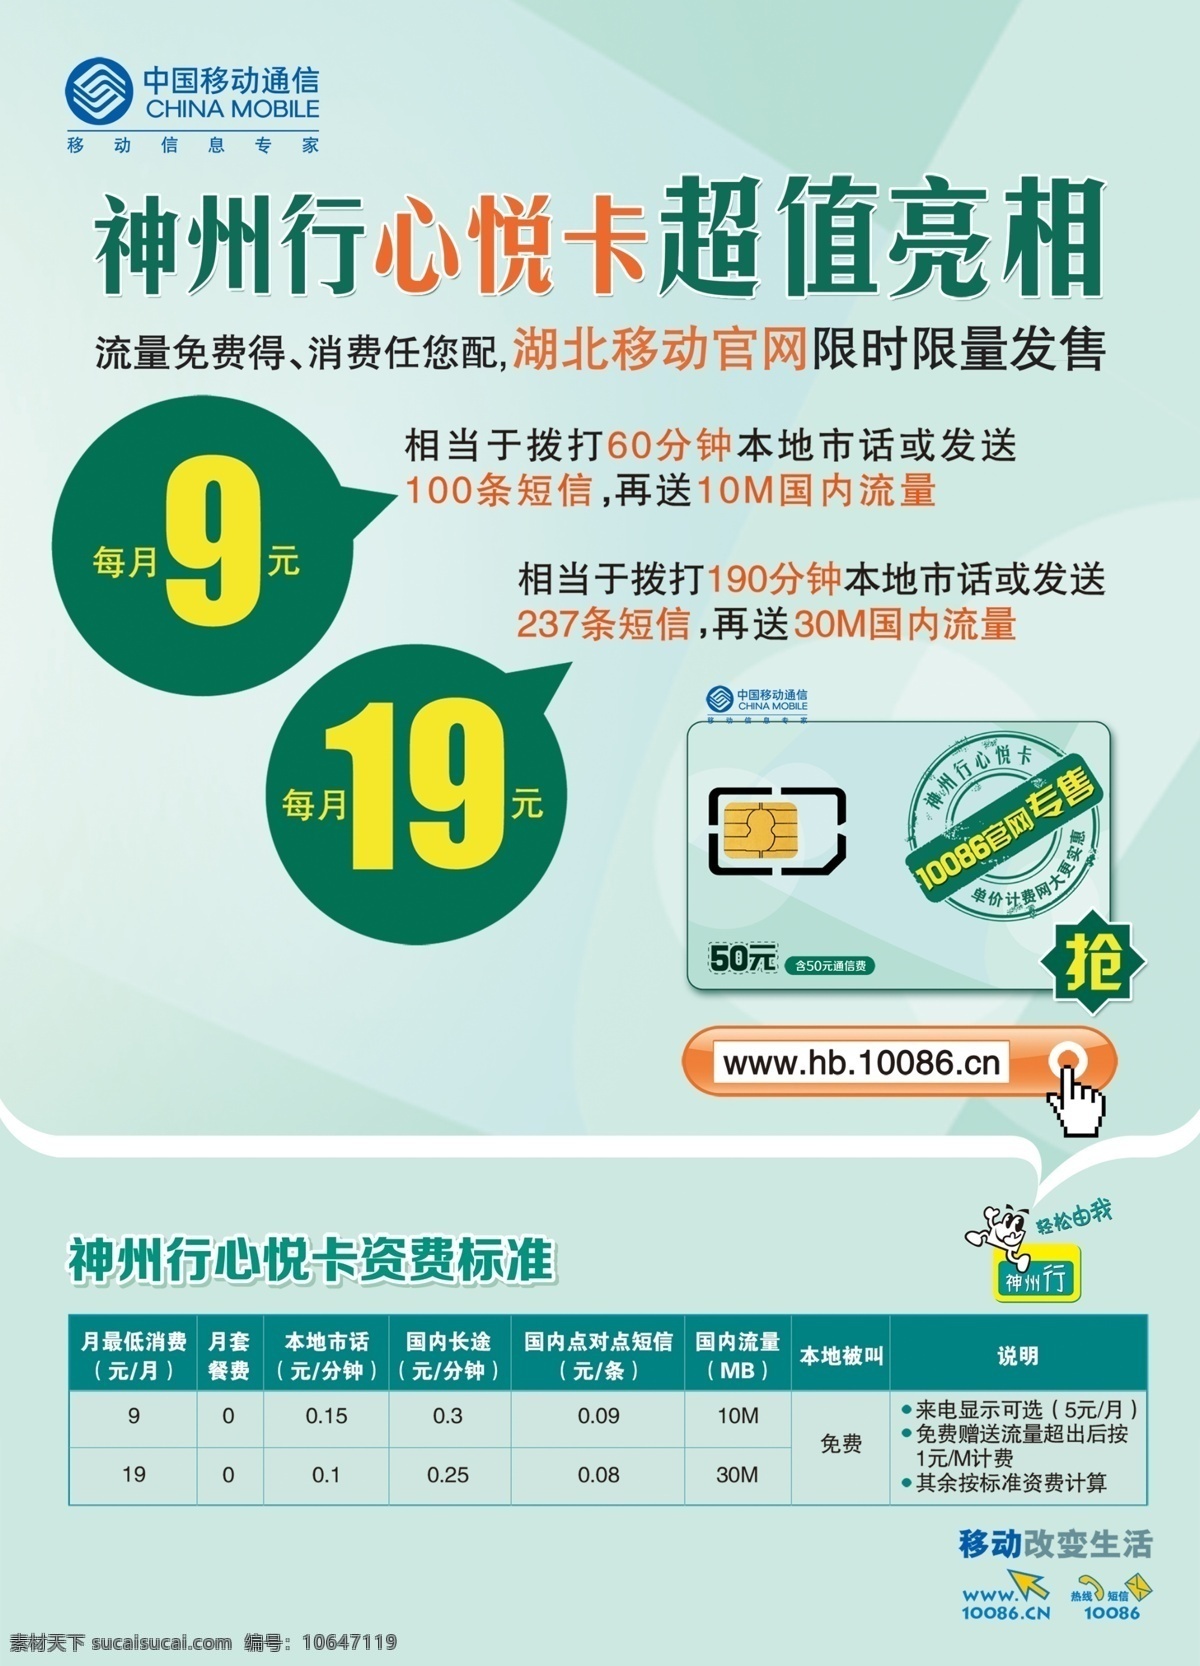 中国移动 宣传单 标志 超值 广告设计模板 神州行 移动 源文件 心悦卡 亮相 流量免费得 其他海报设计